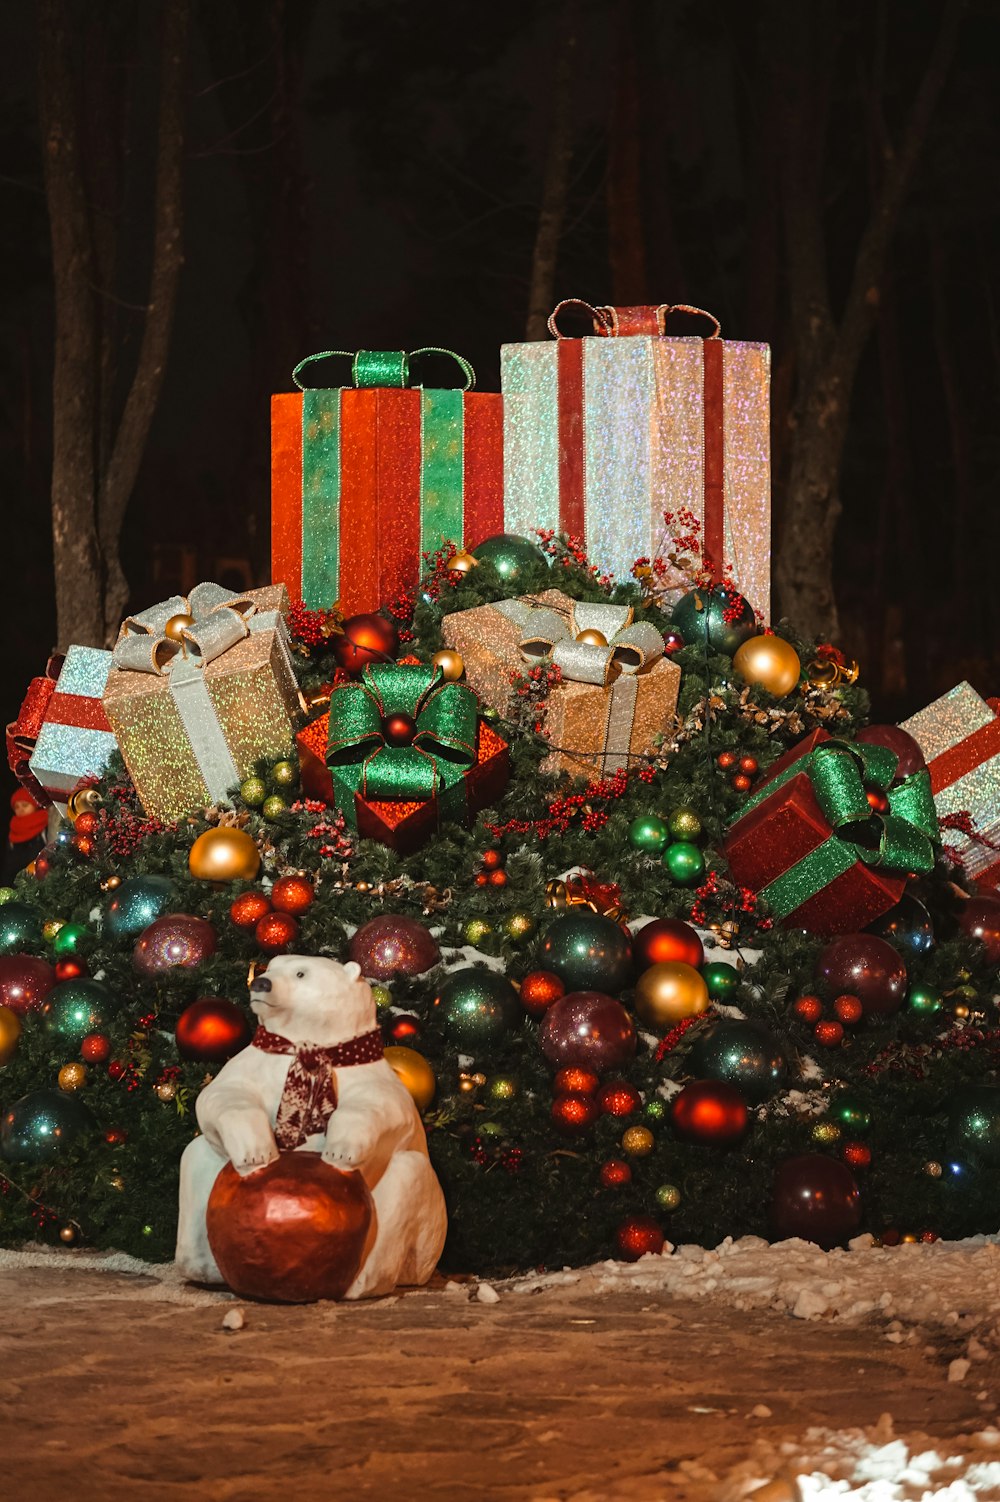 rot-weiße Geschenkbox neben grünem Weihnachtsbaum mit Kugeln und Kugeln